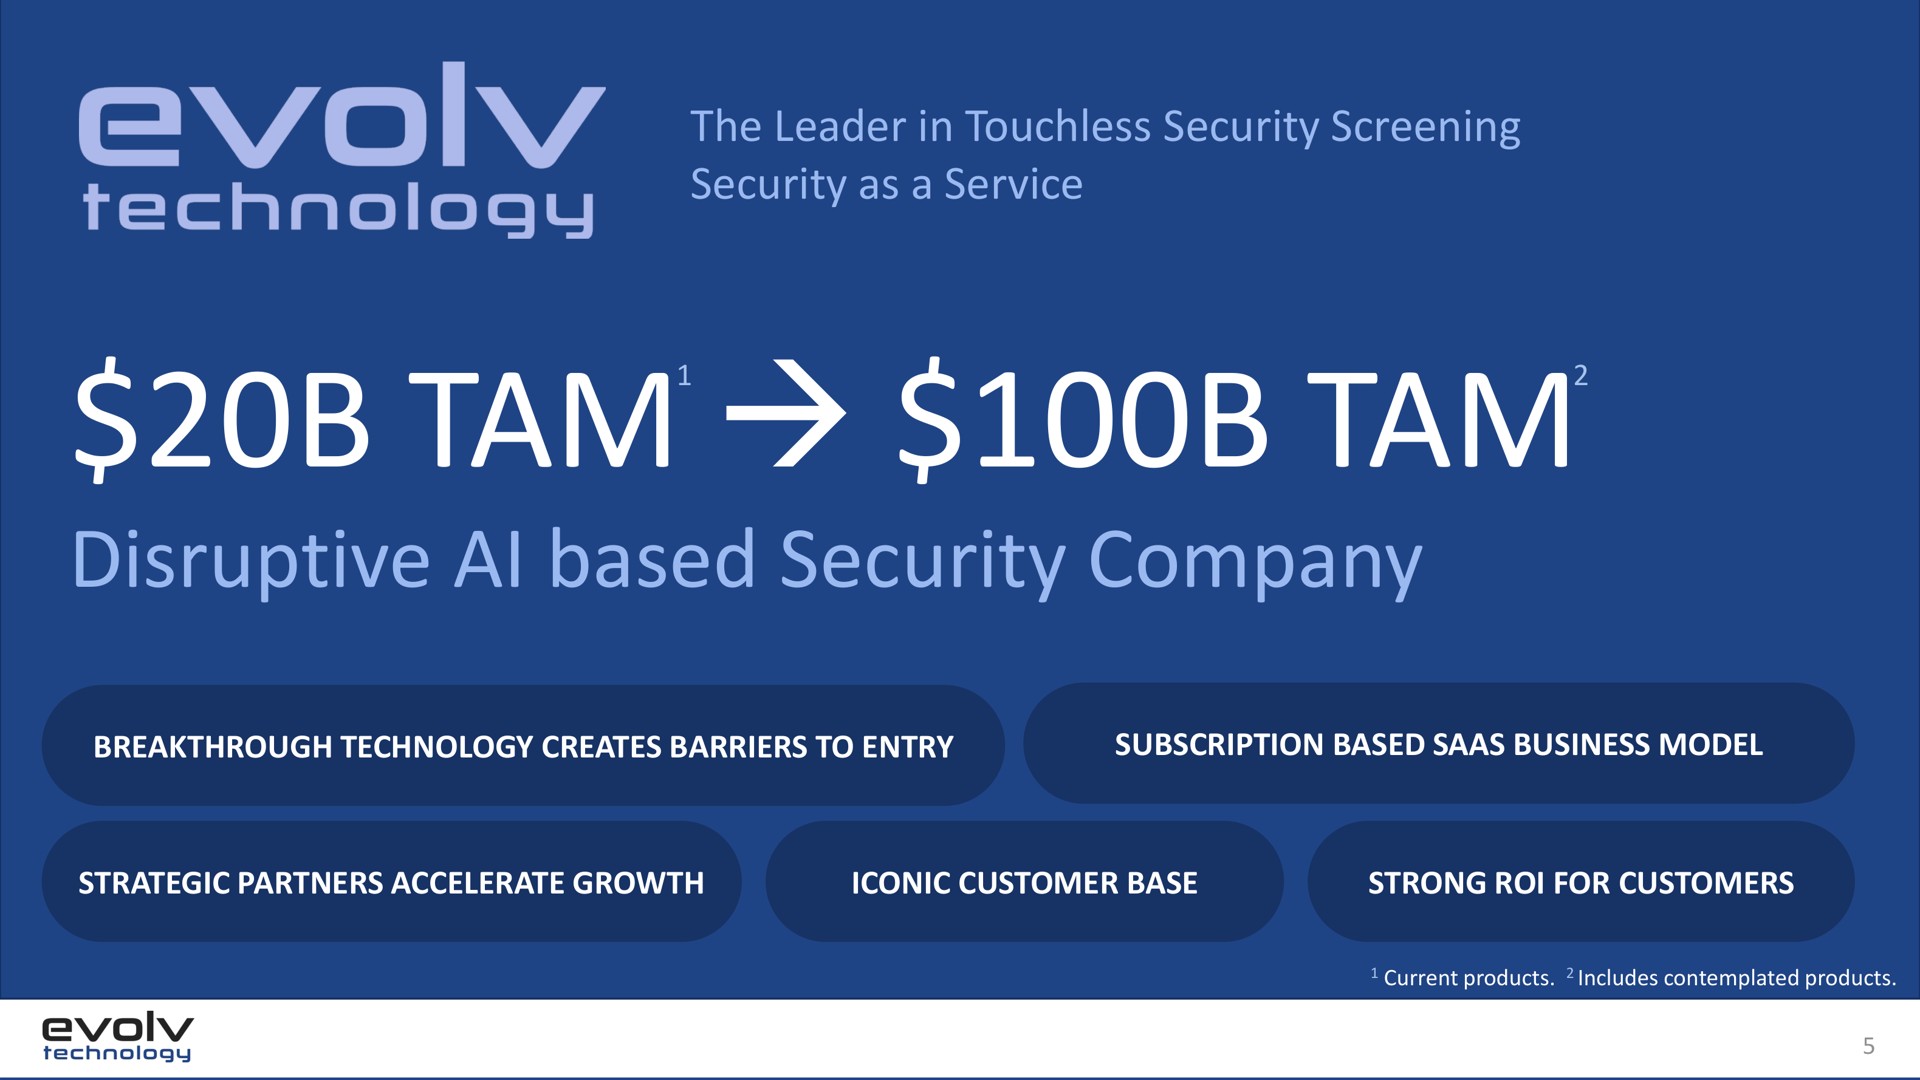 tam tam disruptive based security company | Evolv